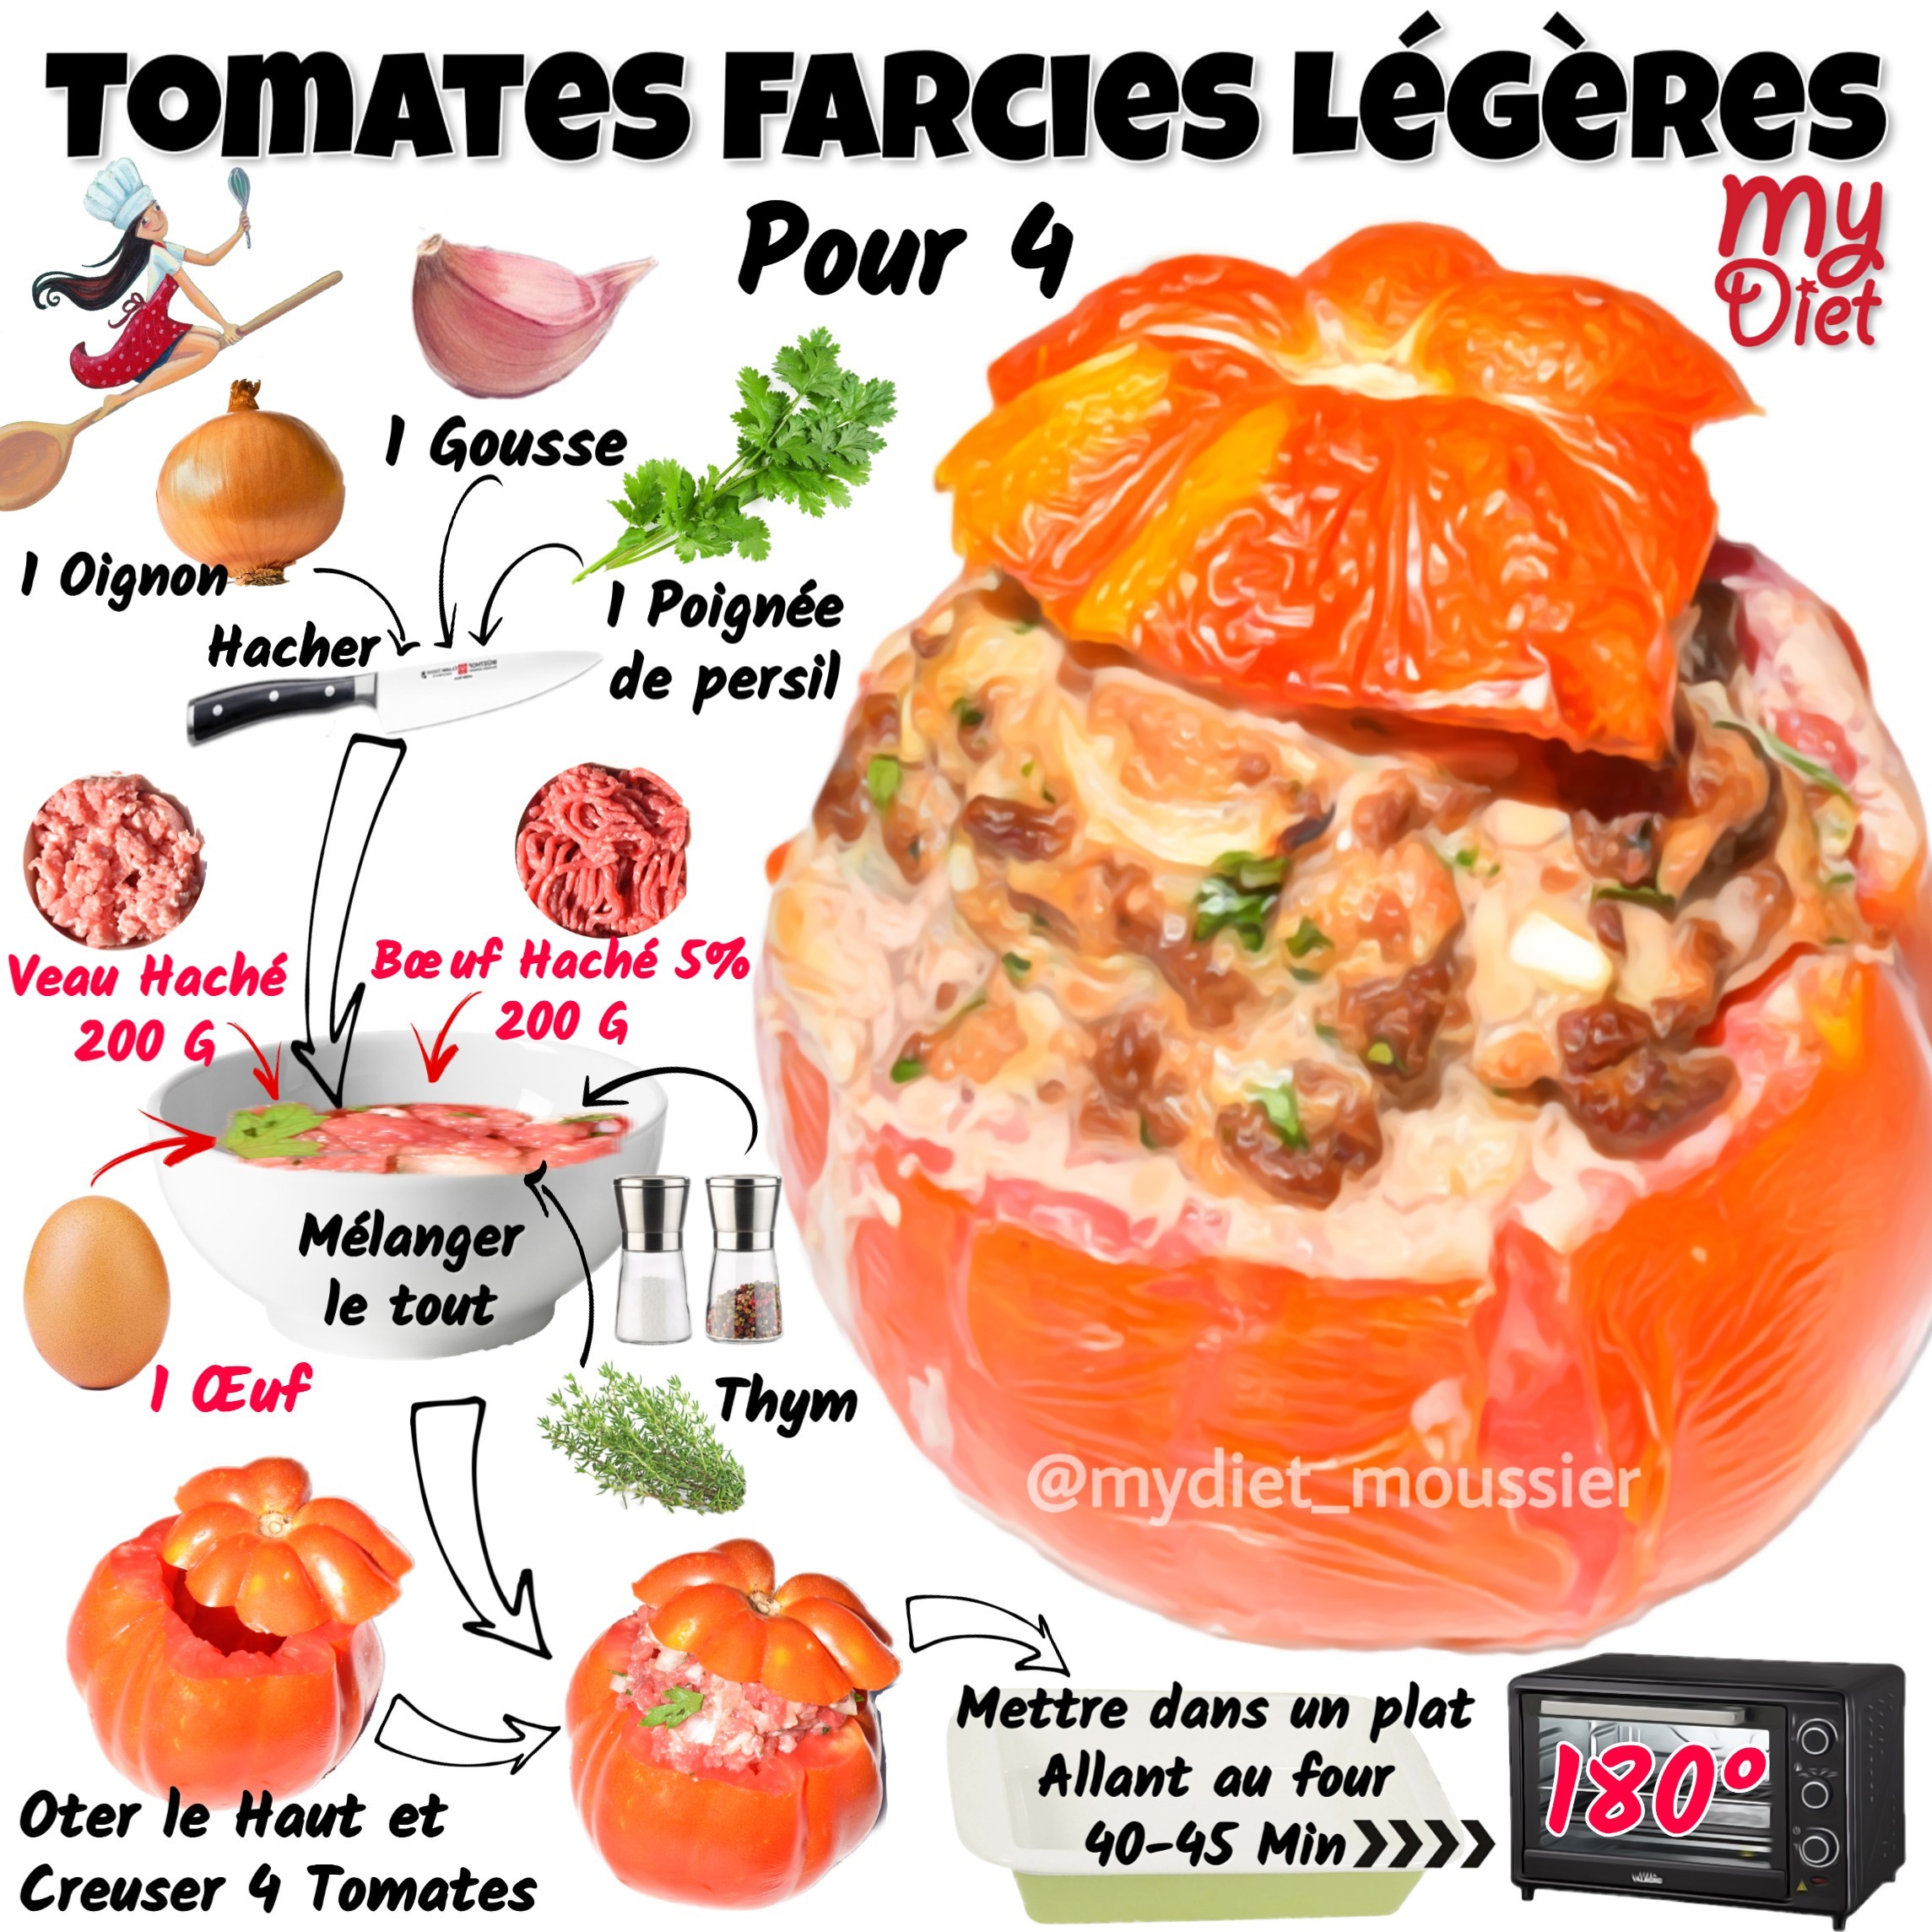 Tomates farcies légères